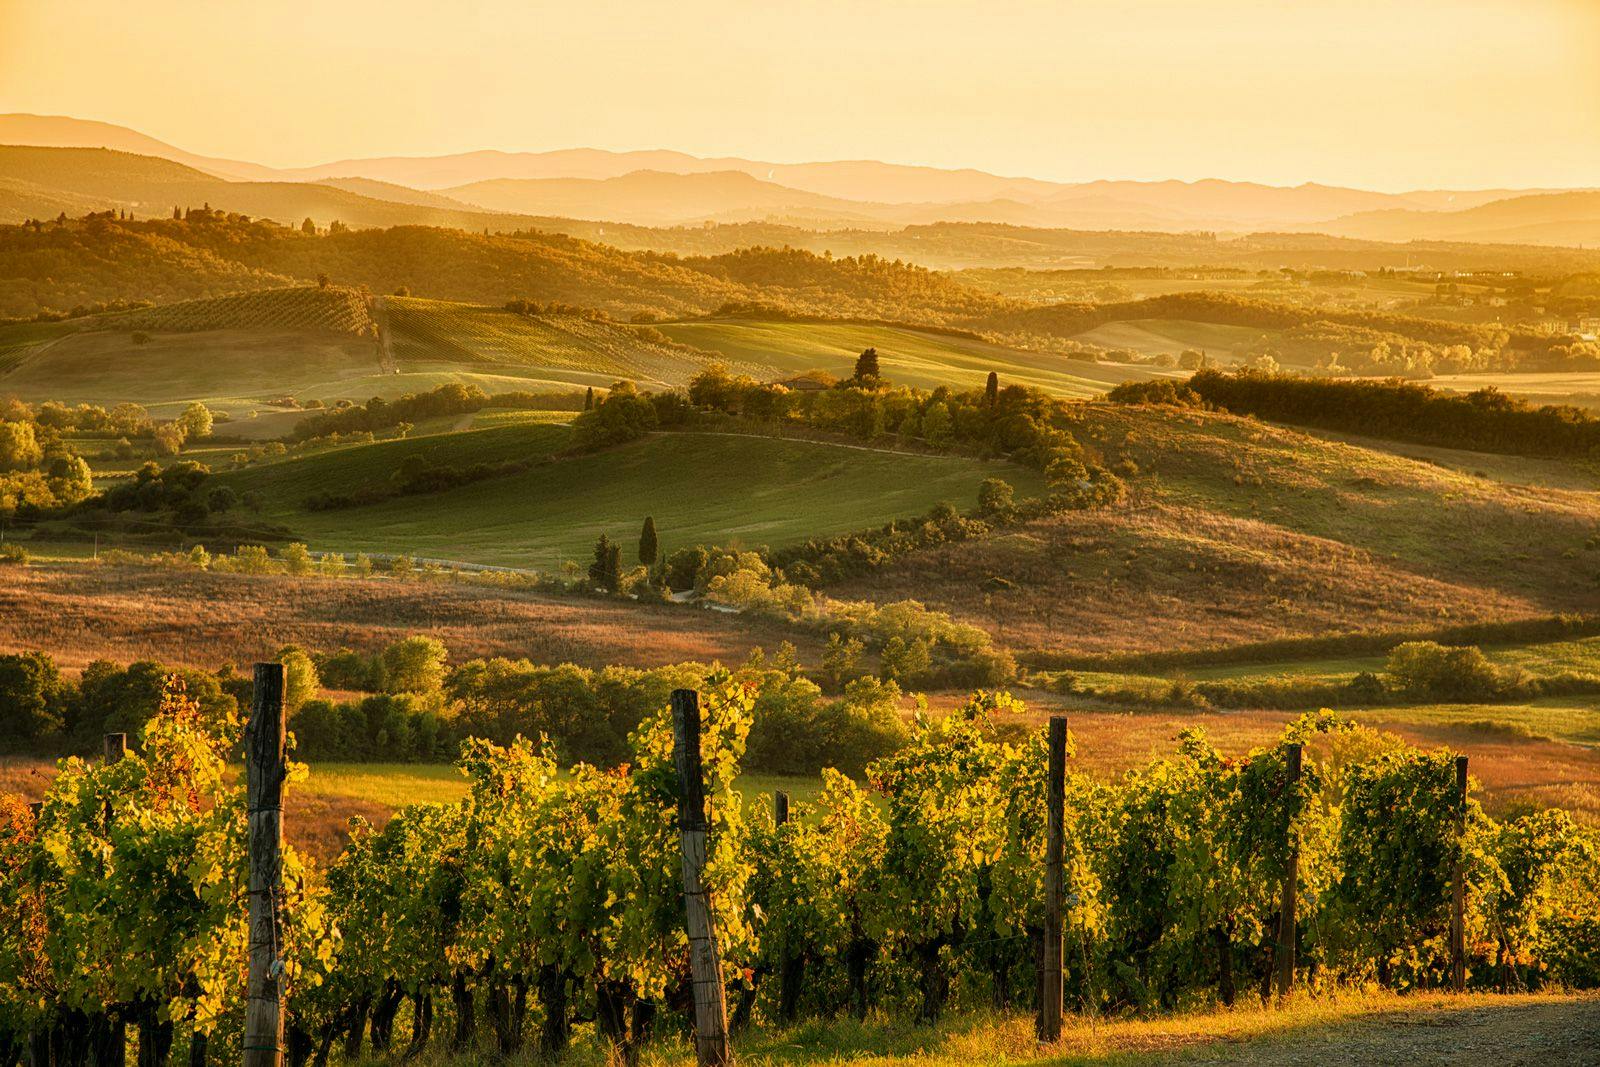 A Tuscan vineyard at dusk